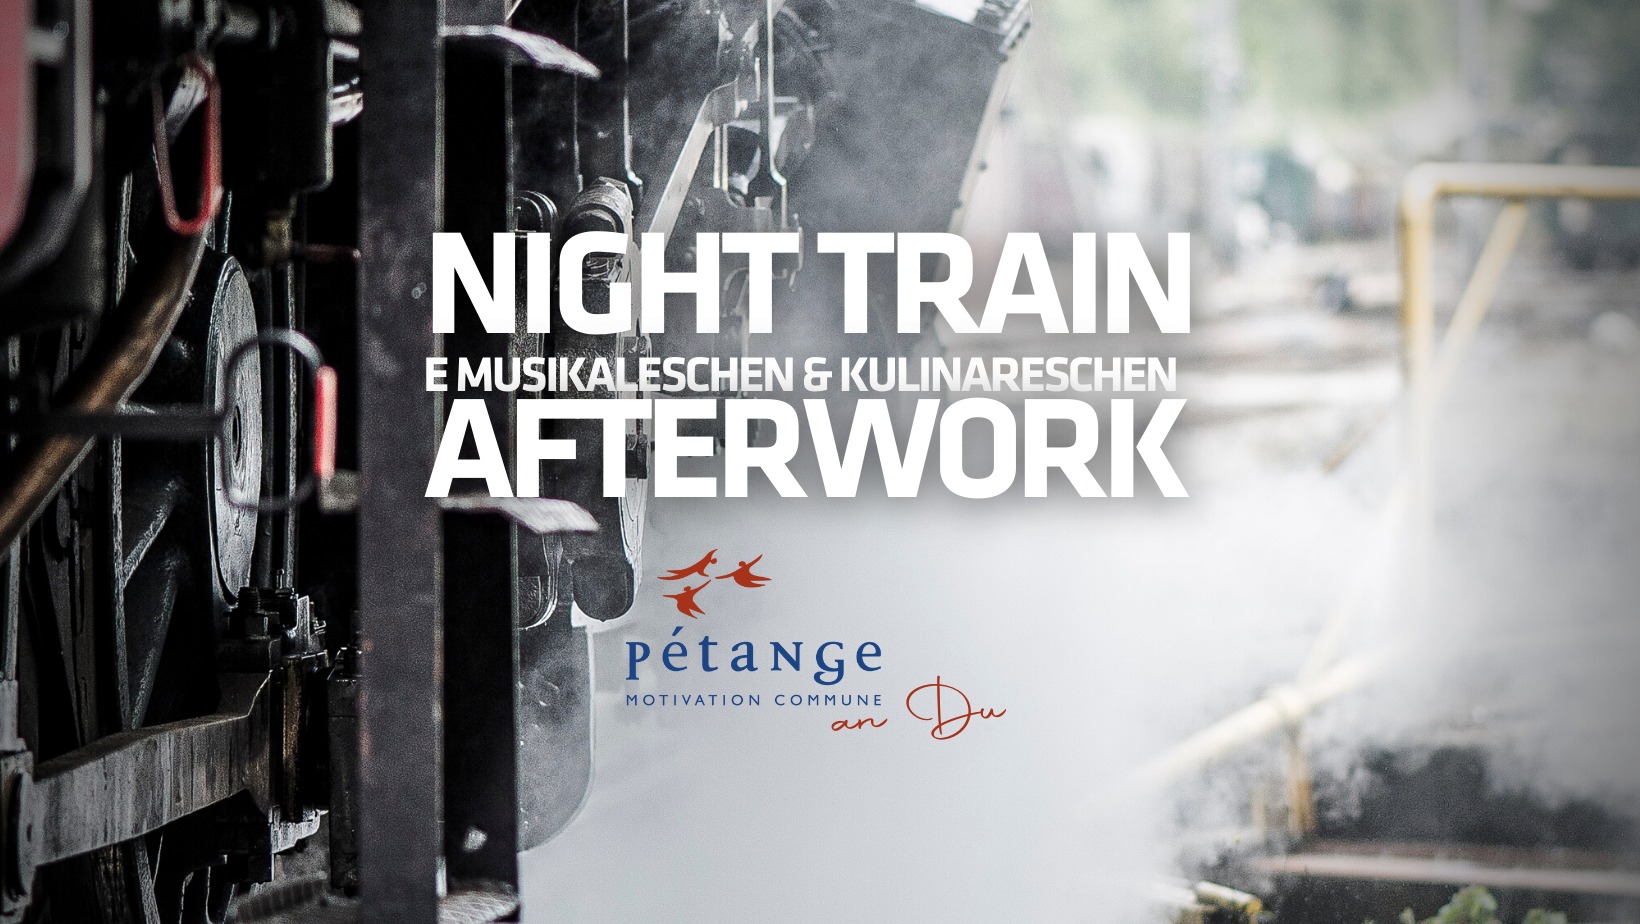 Night-train – ein kulinarisches und musikalisches Afterwork